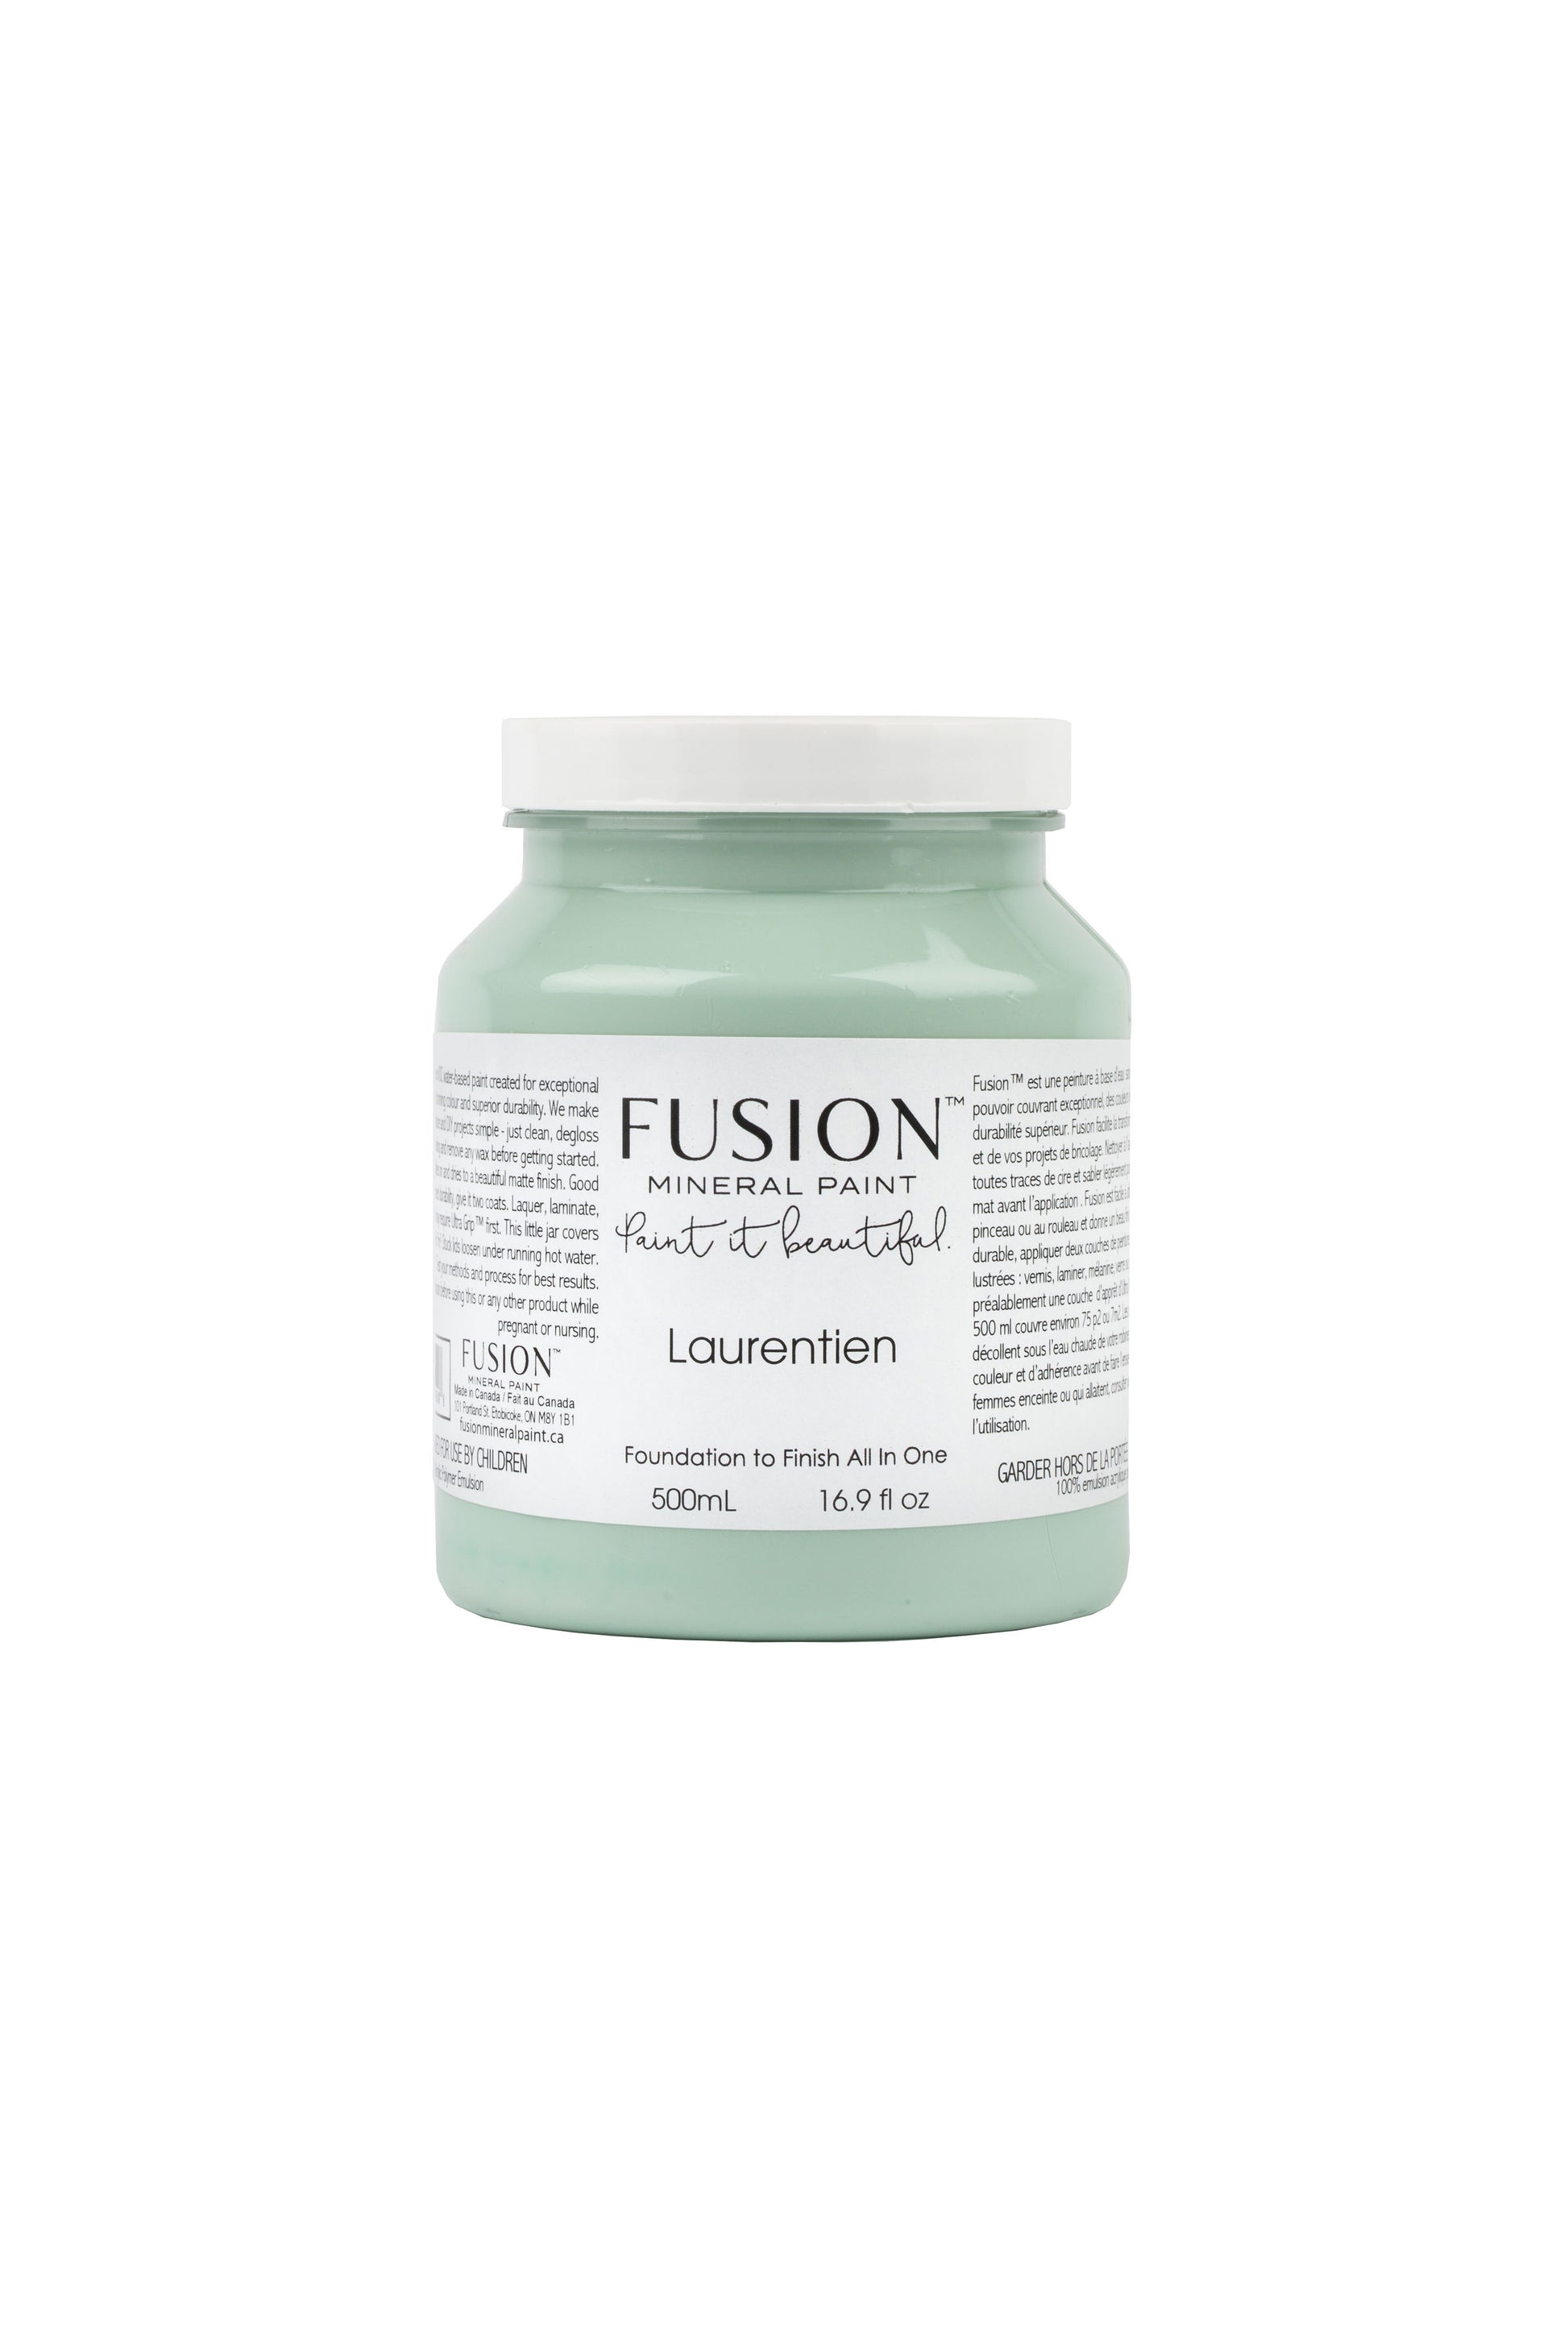 Laurentien Fusion Mineral Paint, Blue- Green Paint Color| 500ml Pint Size